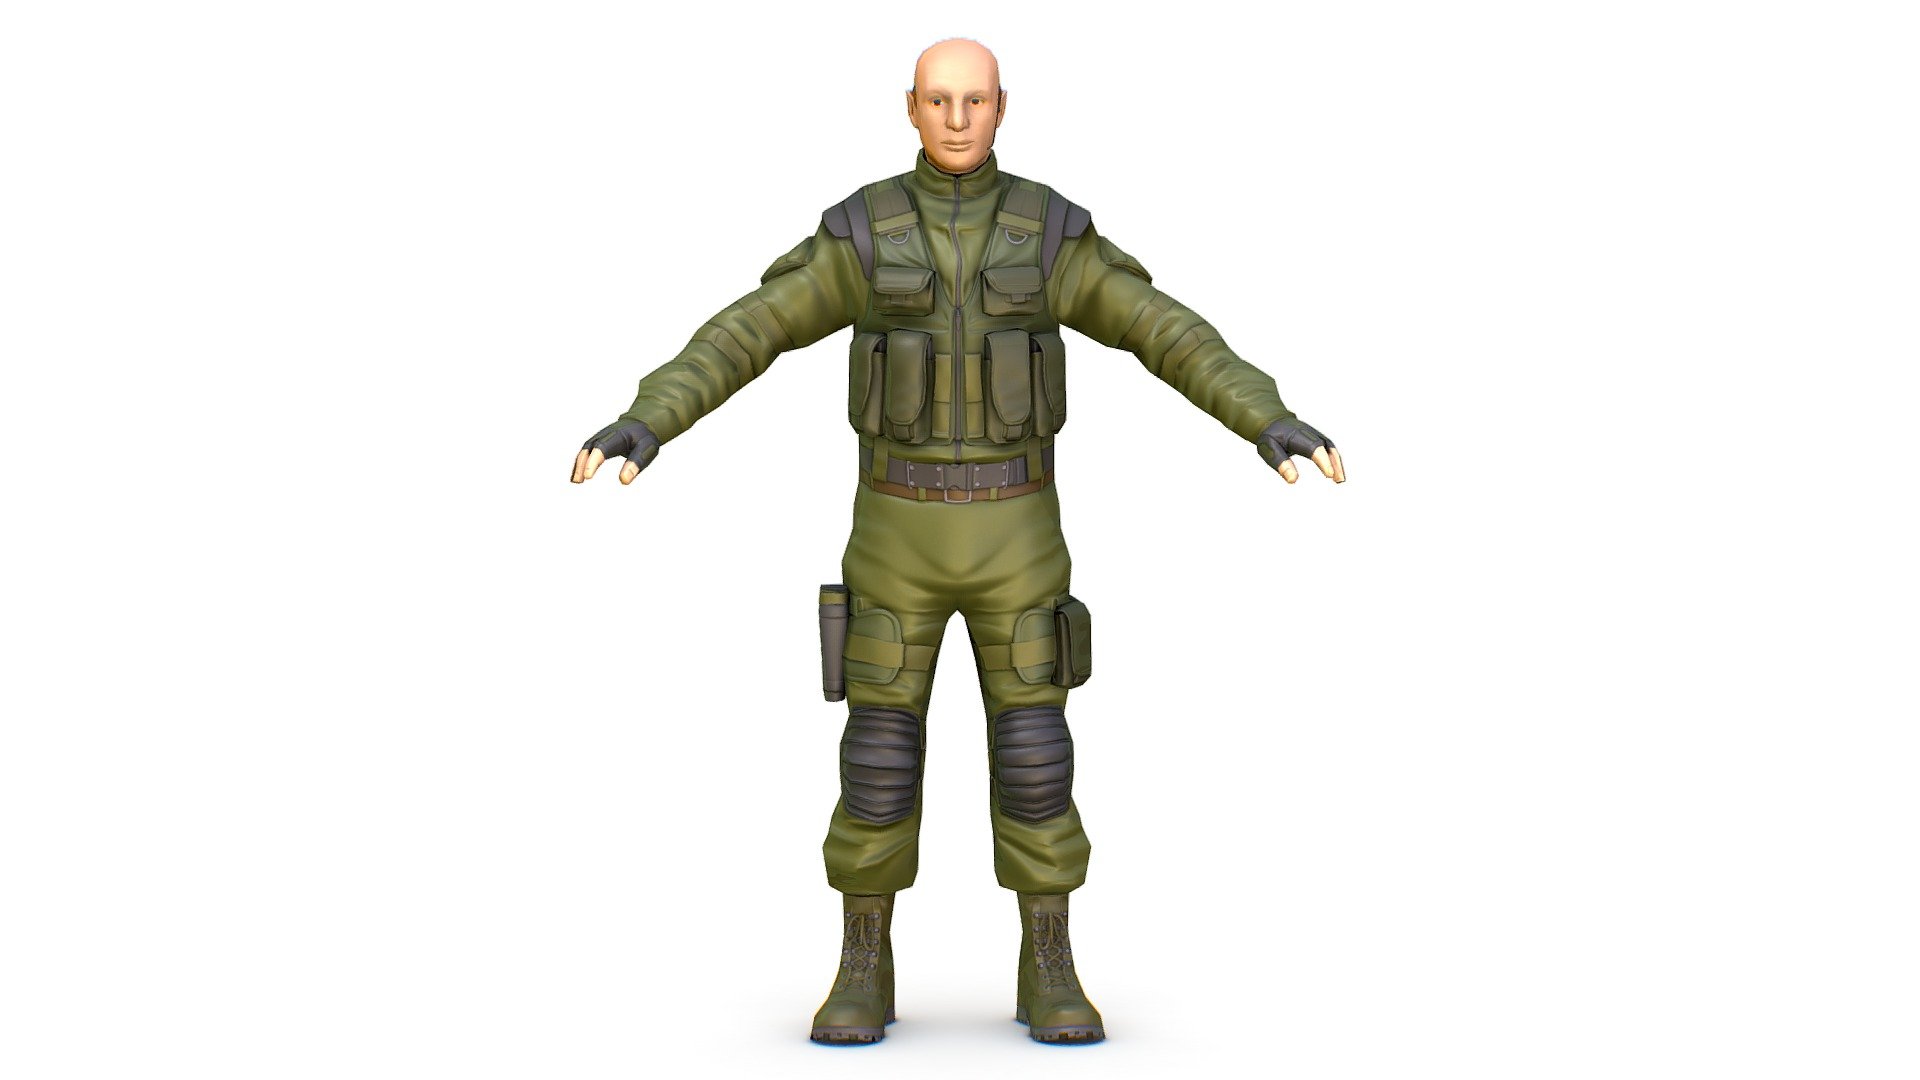 LowPoly 3D model - Men Military Solder Armor / 3dsMaya File / OBJ file - included - LowPoly 3d Man Military Solder Armor - Buy Royalty Free 3D model by Oleg Shuldiakov (@olegshuldiakov) 3d model